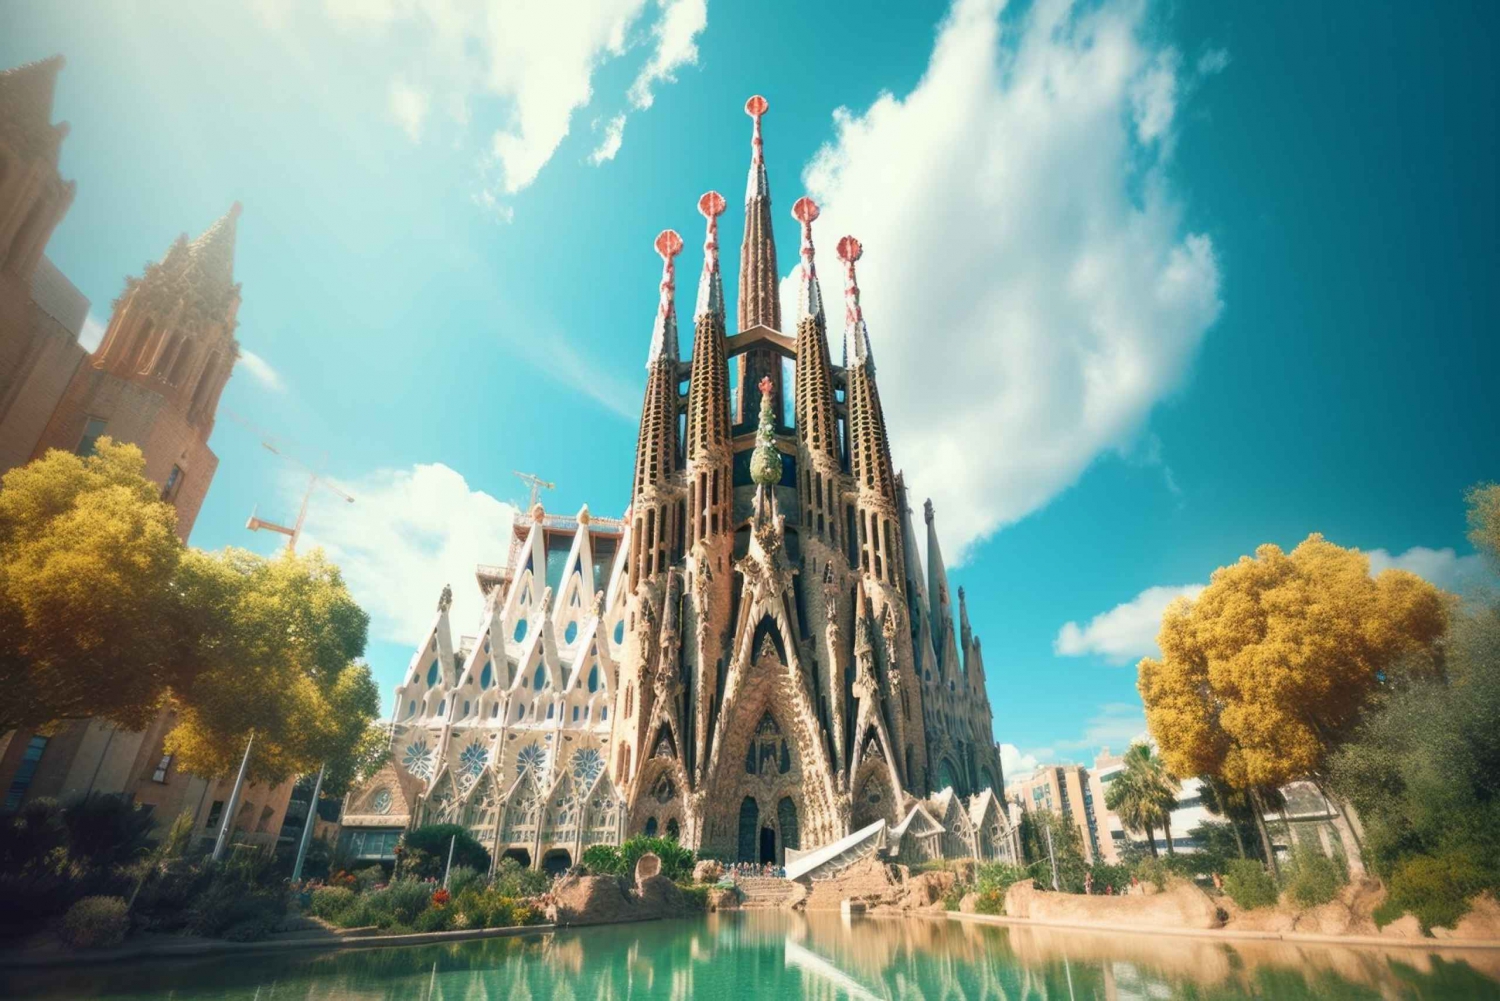 Barcelona de Gaudí: Passeio pela Sagrada Família, Casa Batlló e Mila